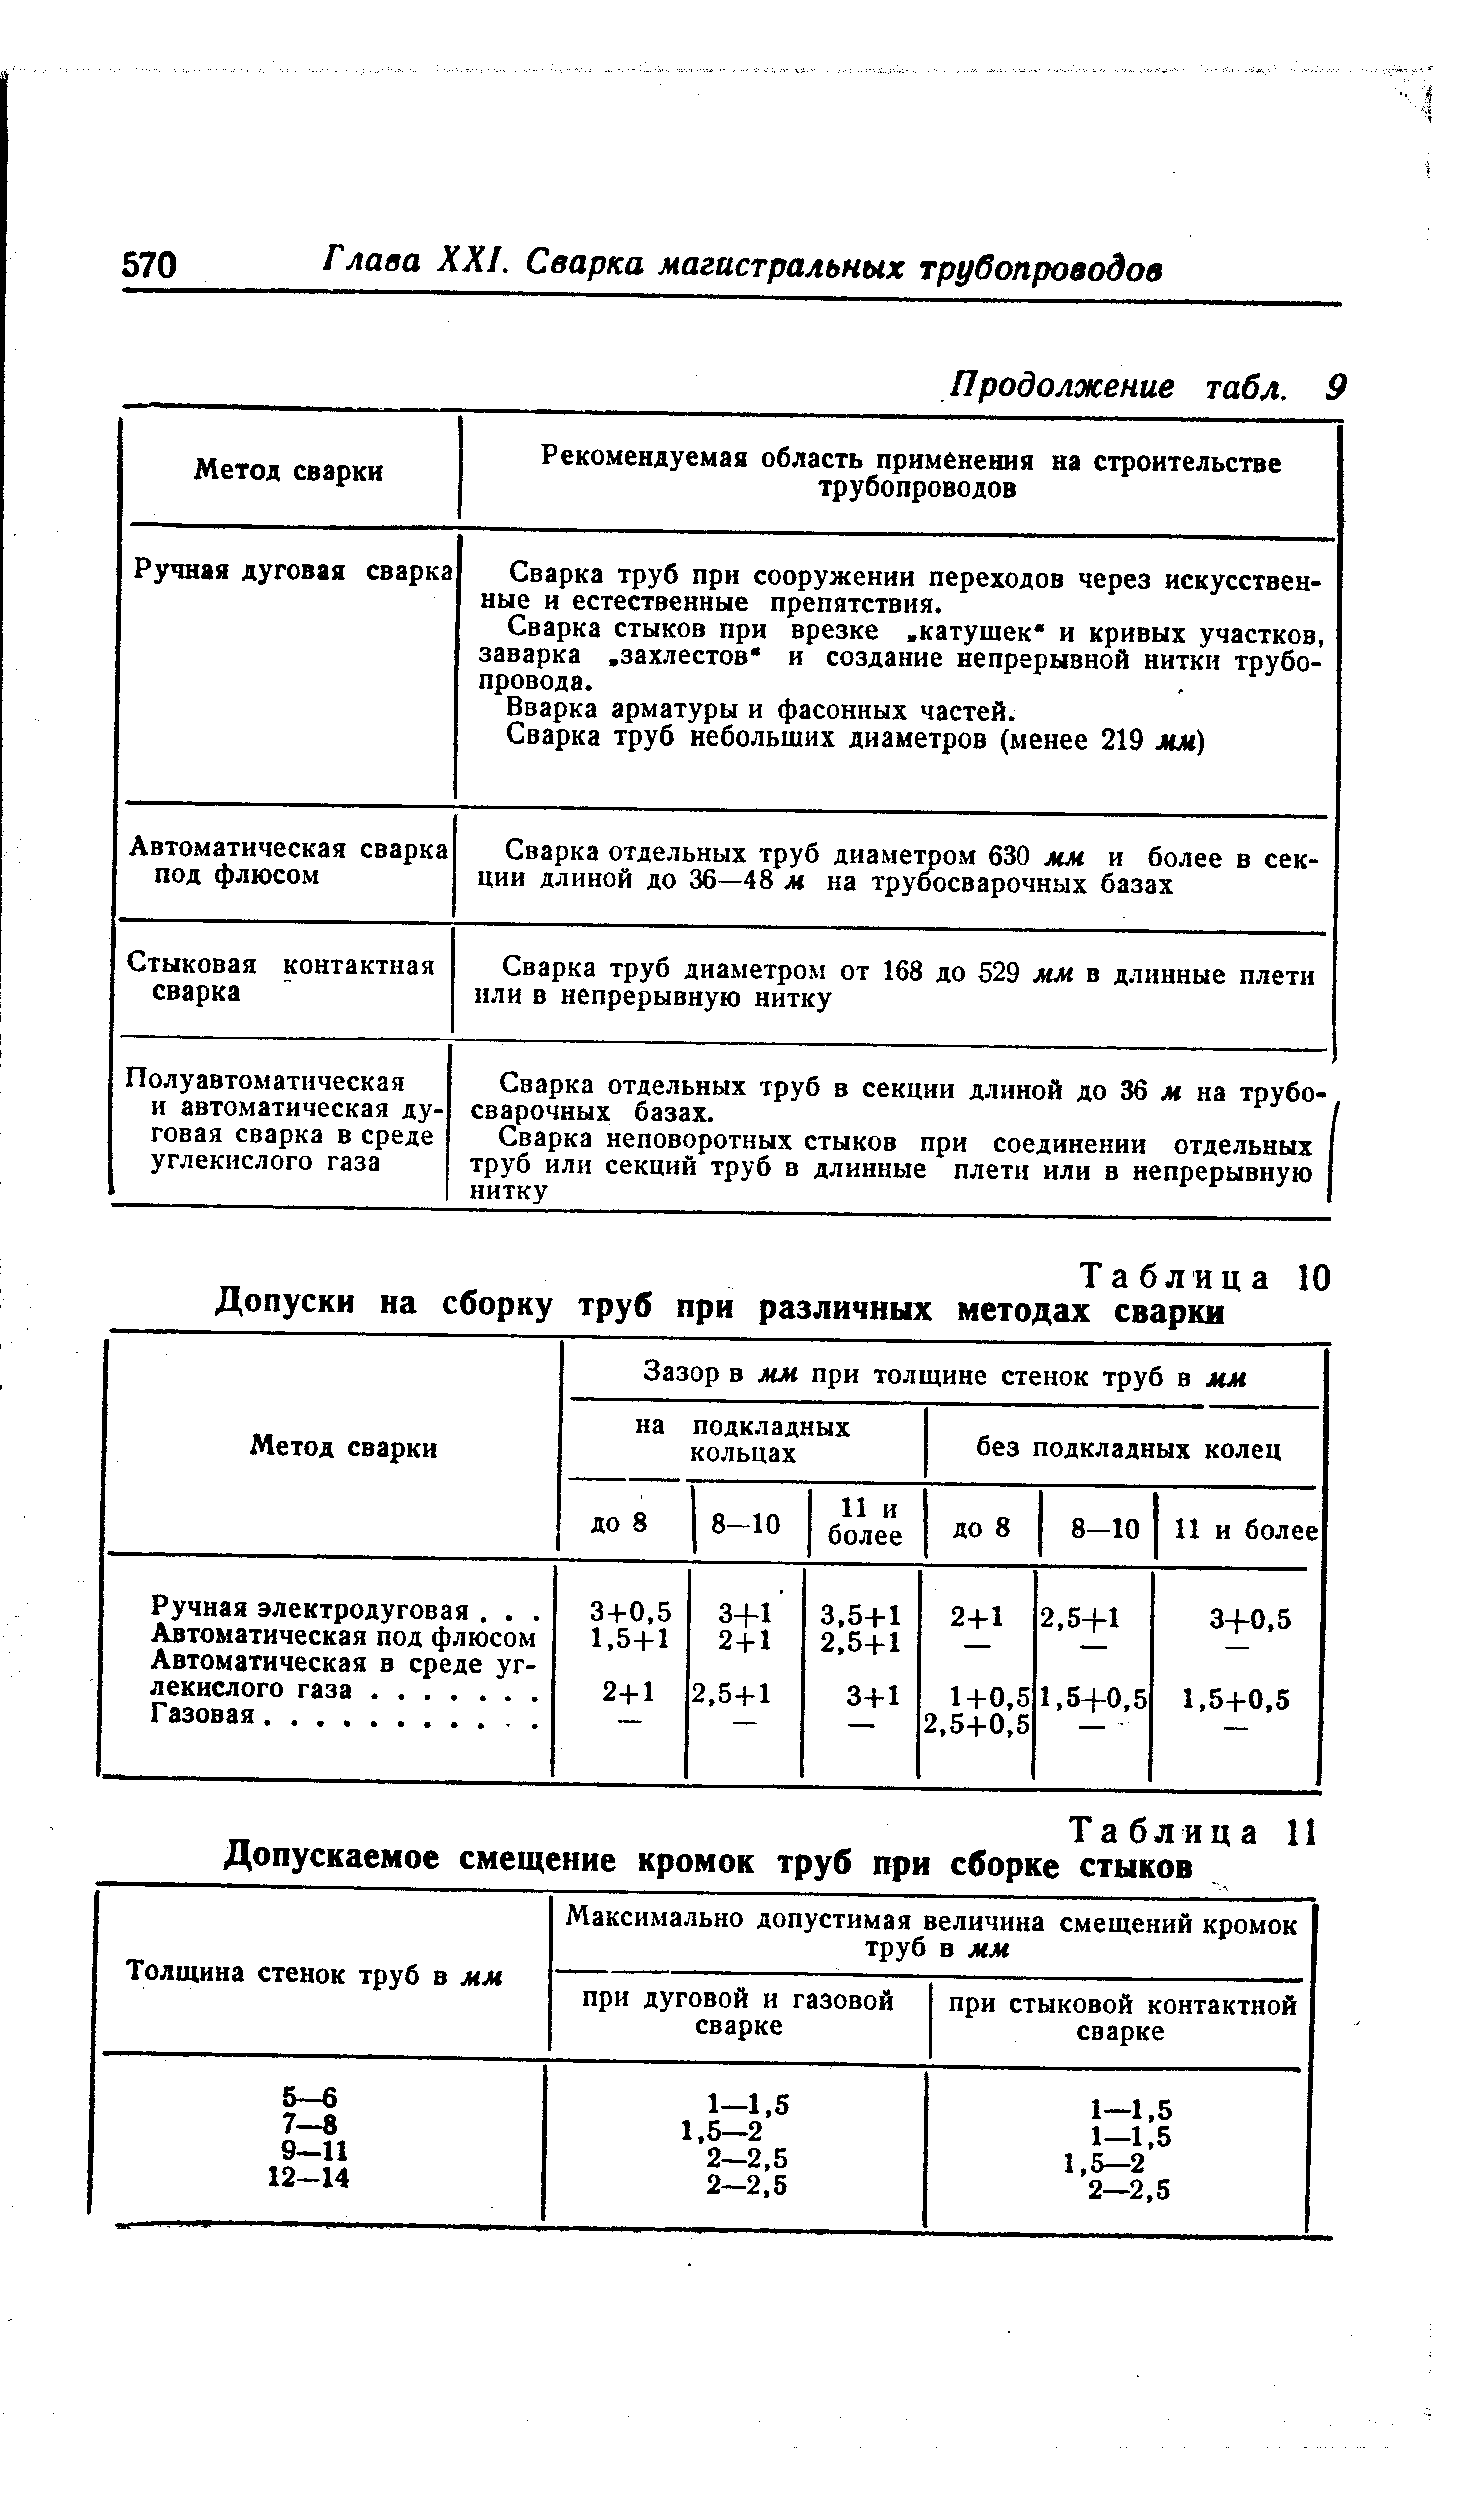 Таблица И Допускаемое смещение кромок труб при сборке стыков
